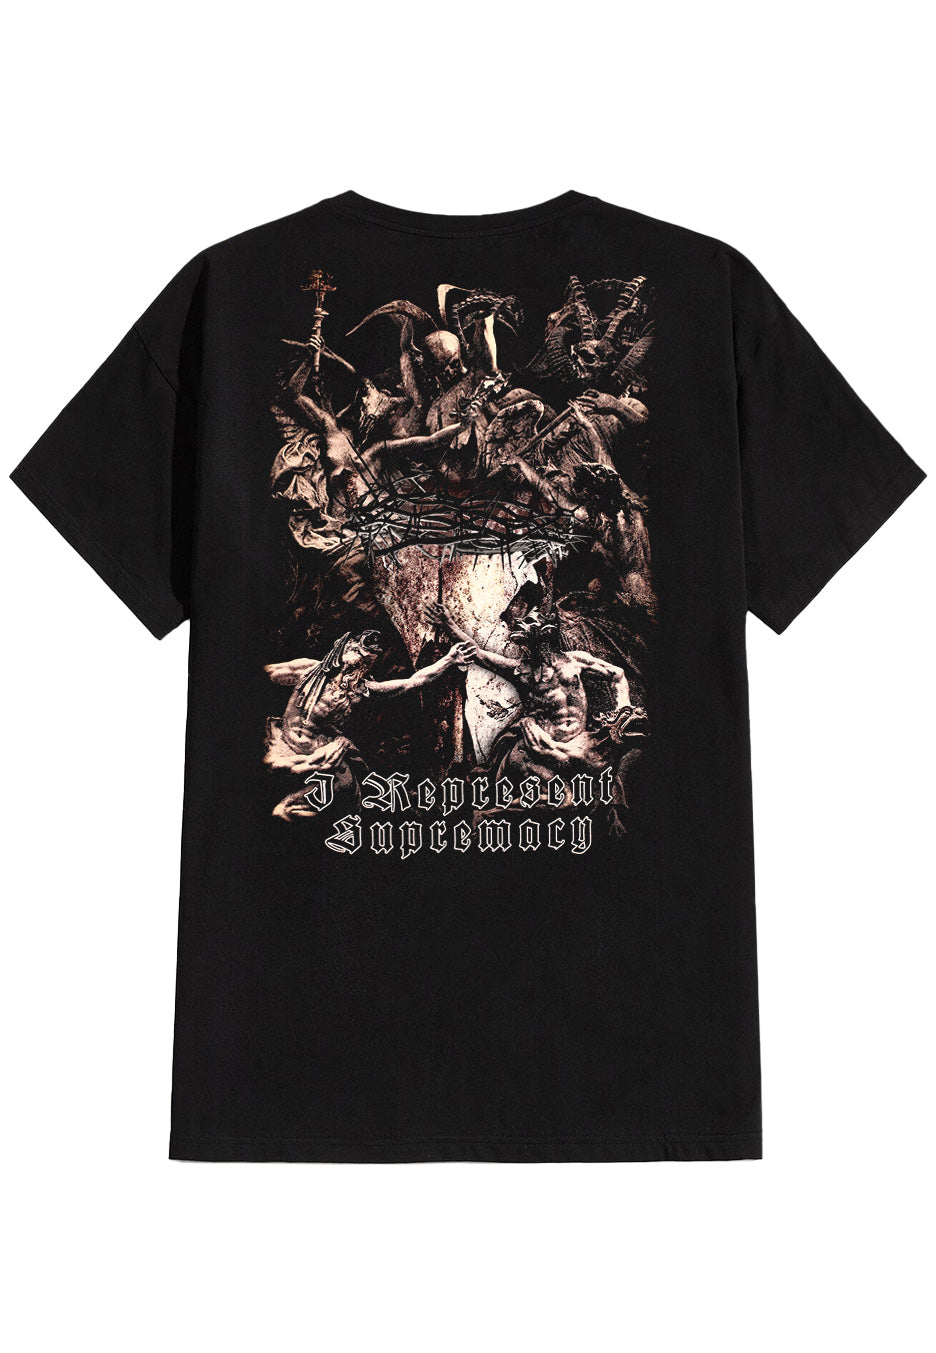 Belphegor - The Devils - T-Shirt